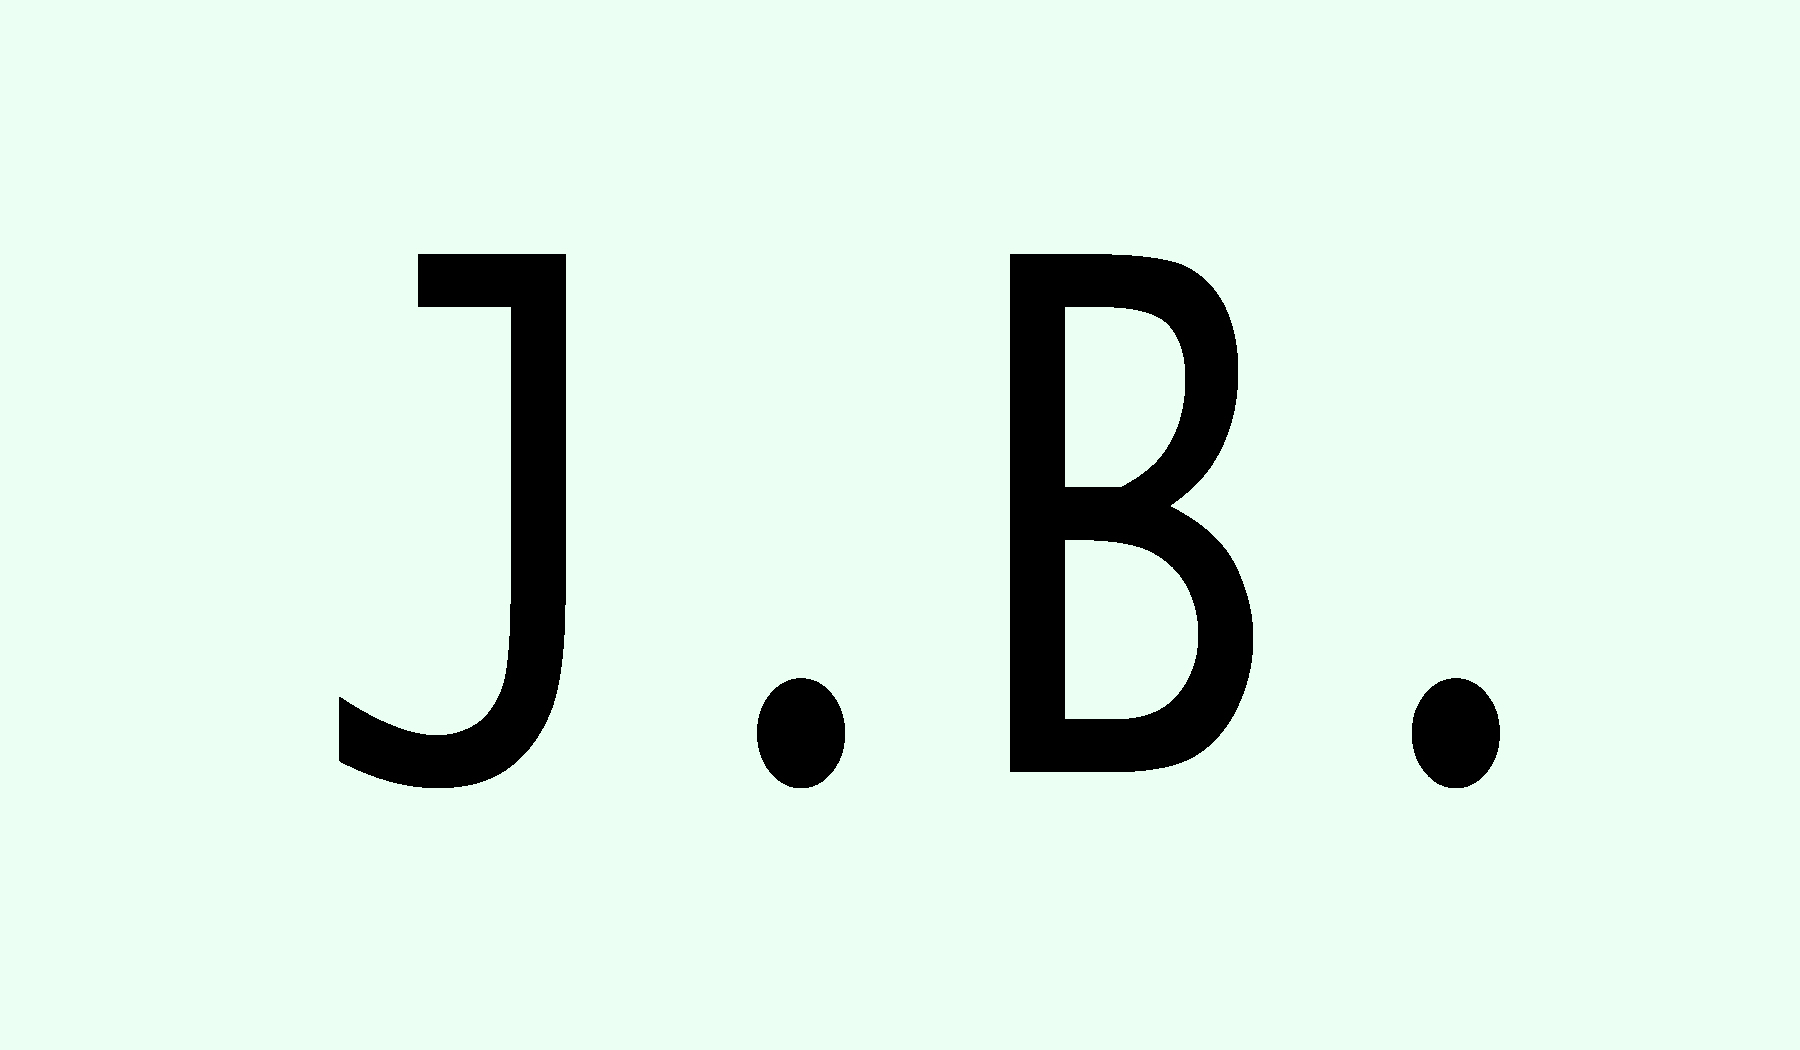 J.B.